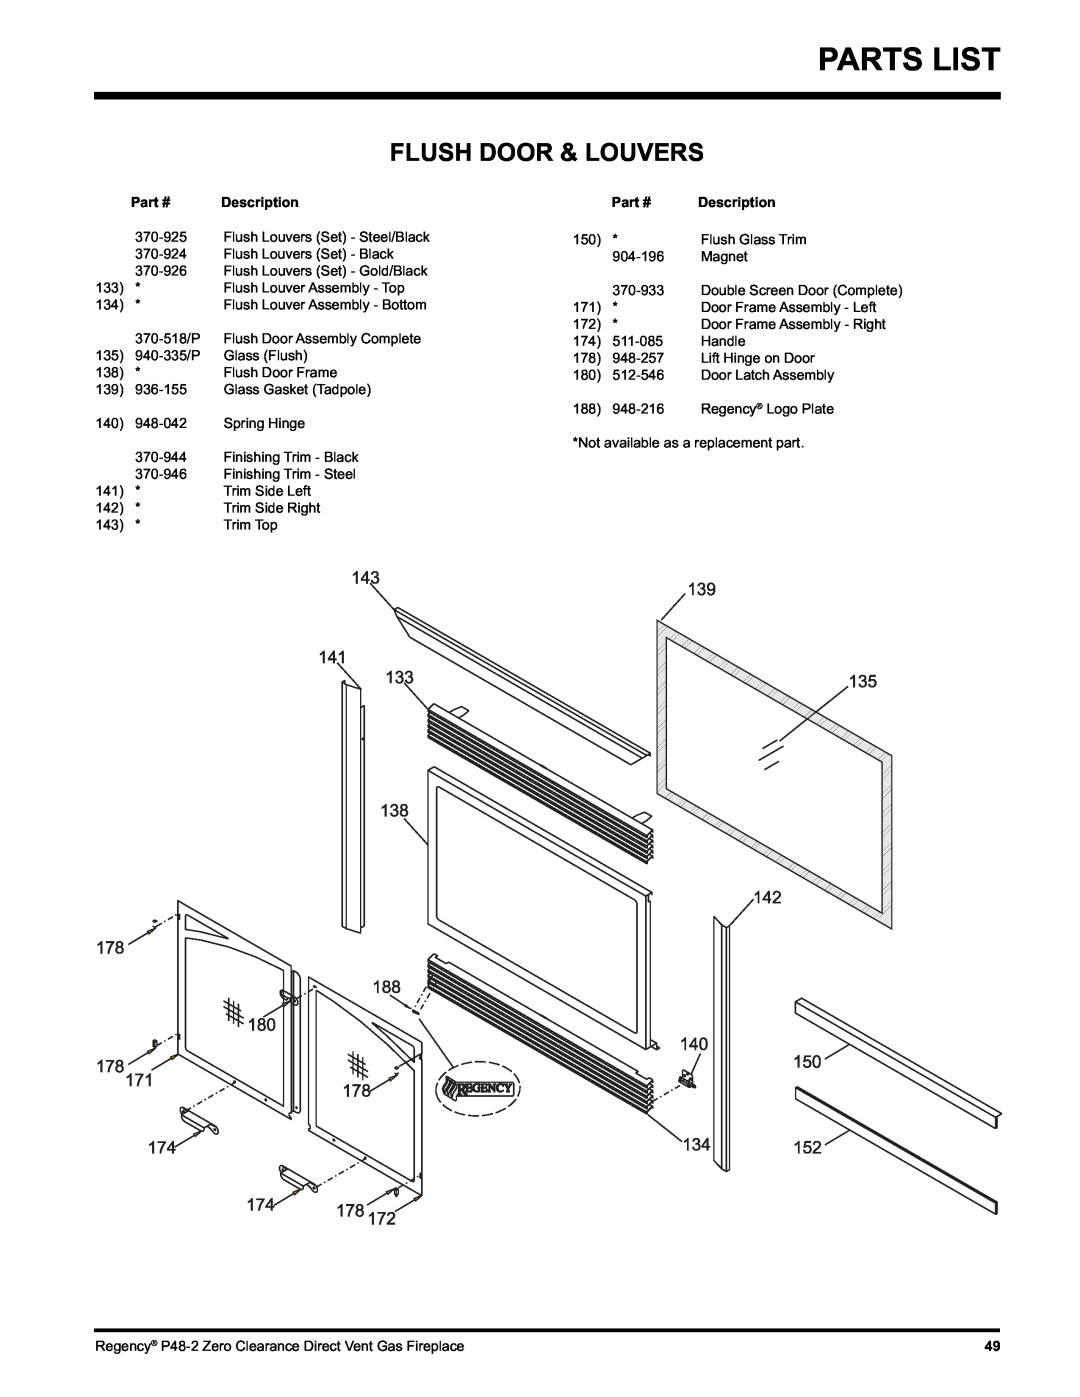 Regency P48-2 installation manual Parts List, Flush Door & Louvers, Description, Part # 